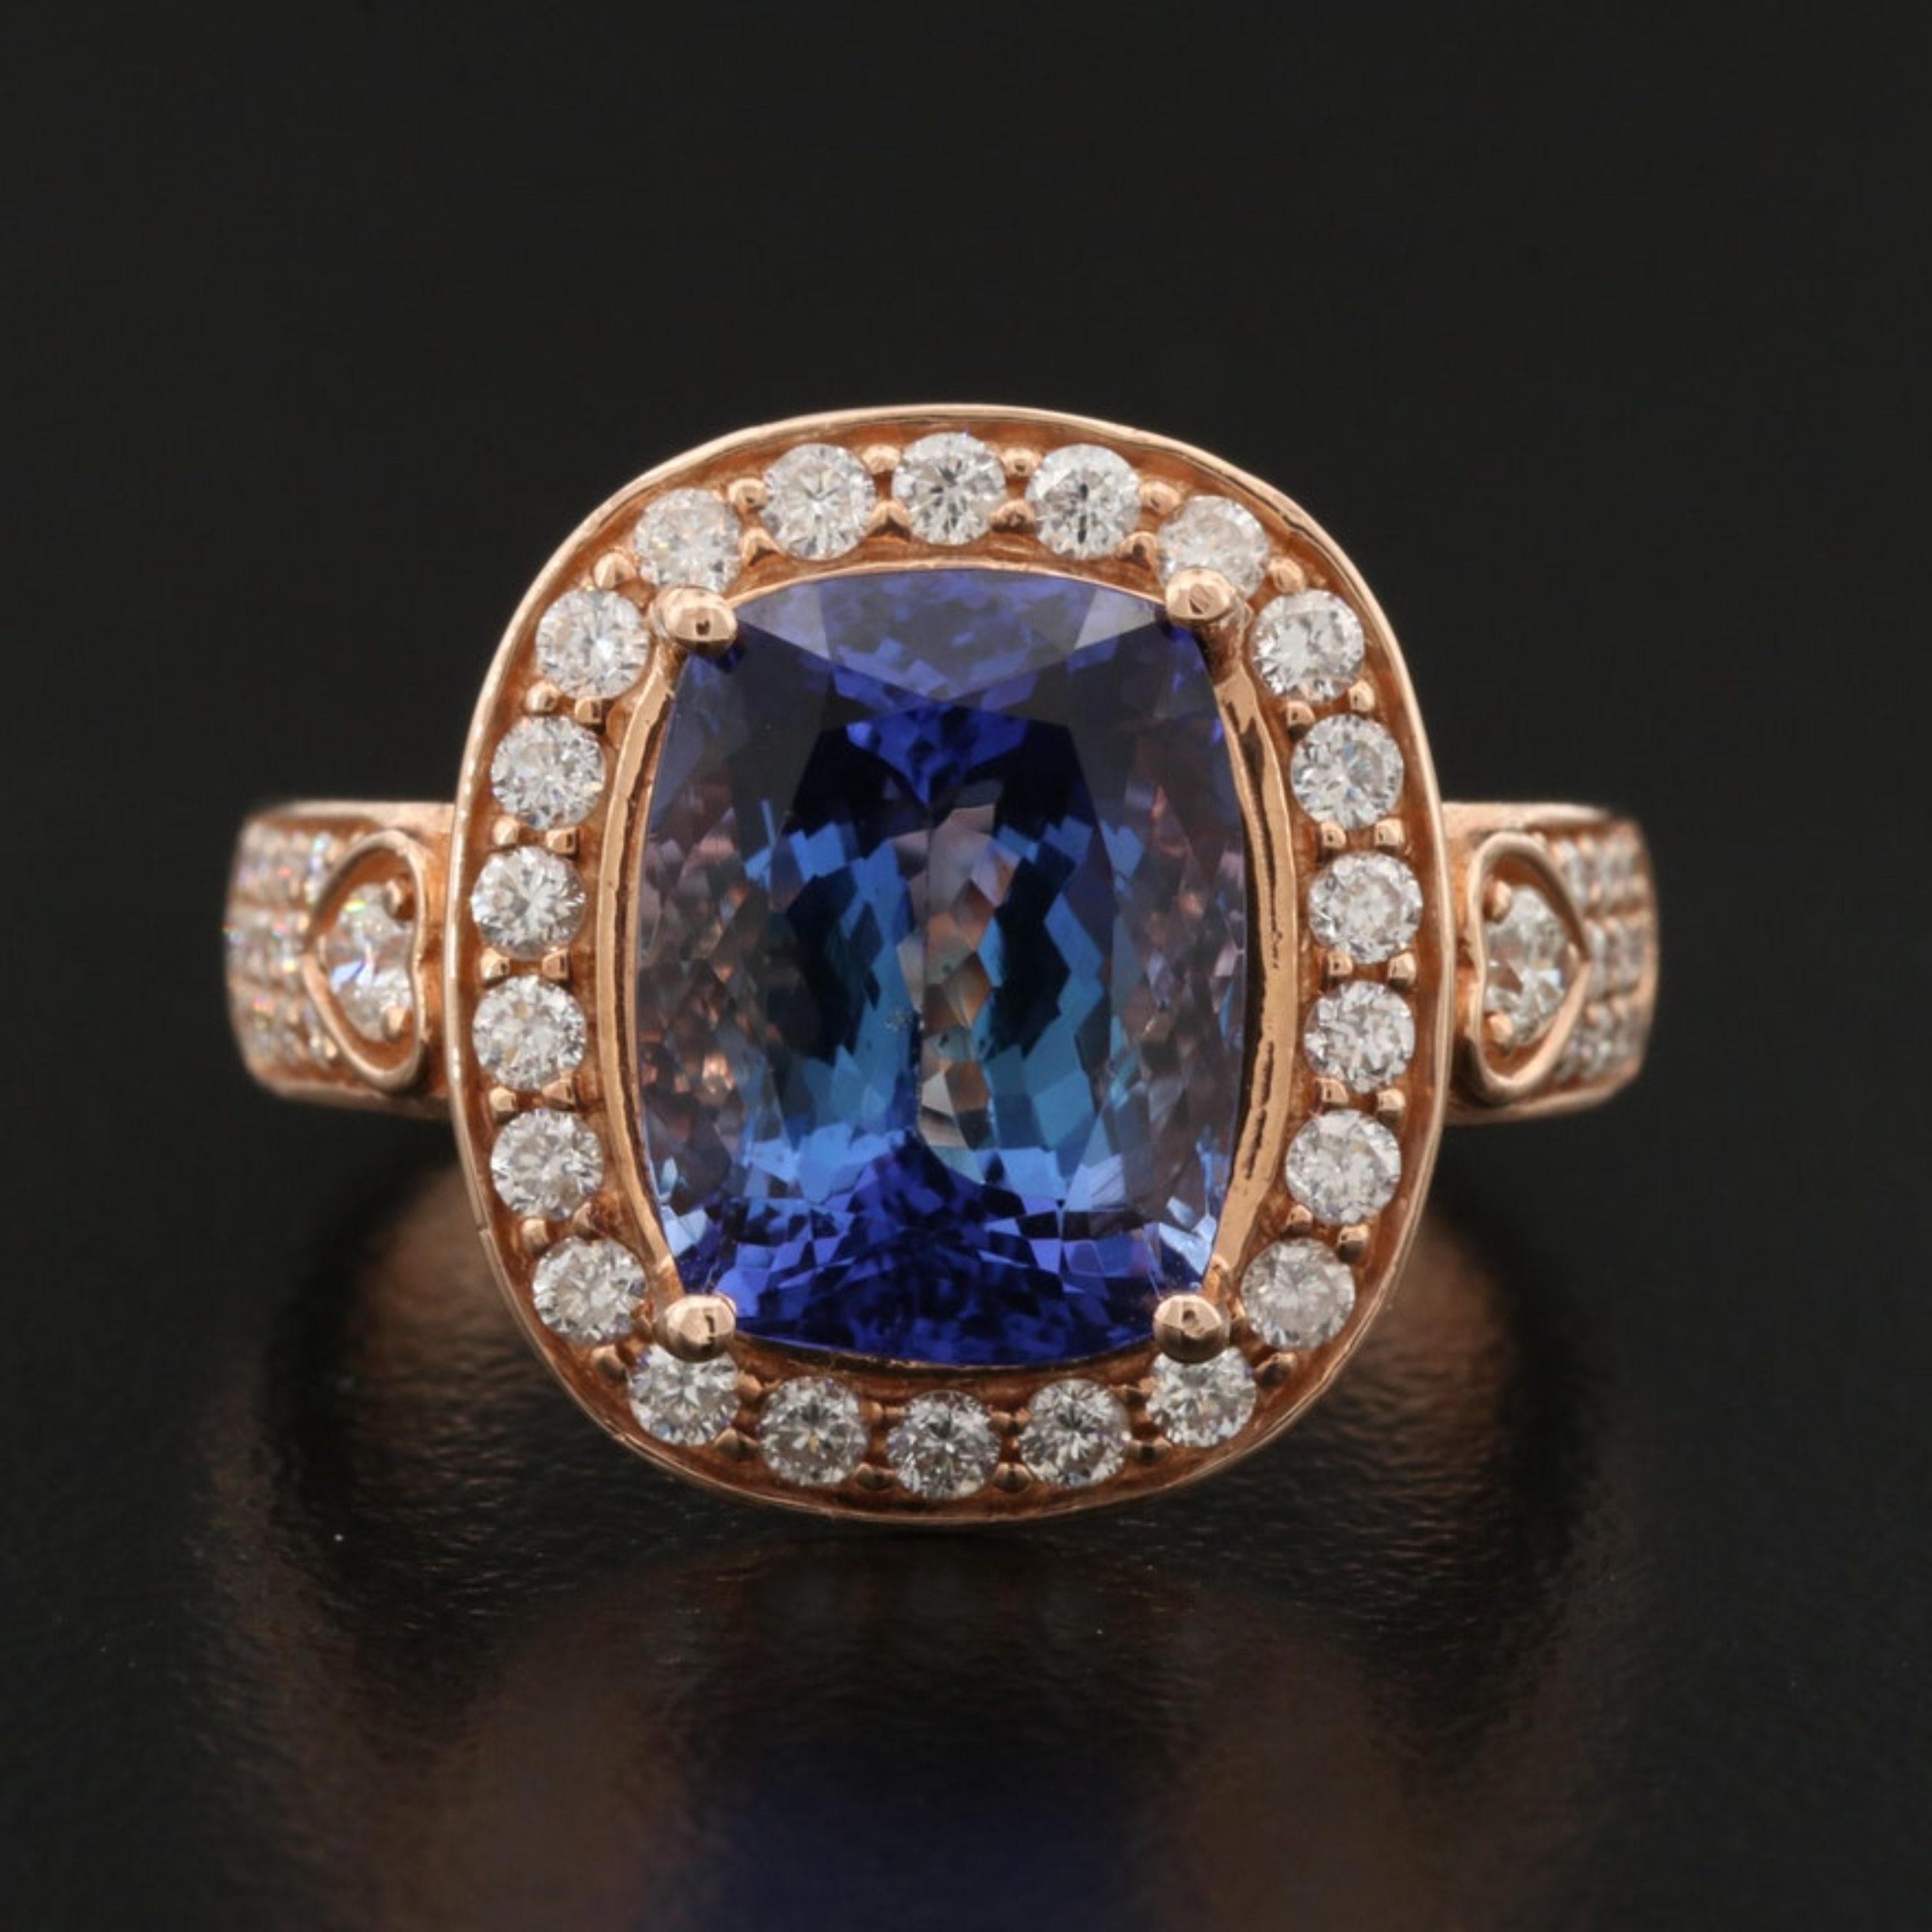 For Sale:  6 Carat Violet Tanzanite Engagement Ring, Halo Diamond Rose Gold Wedding Ring 5